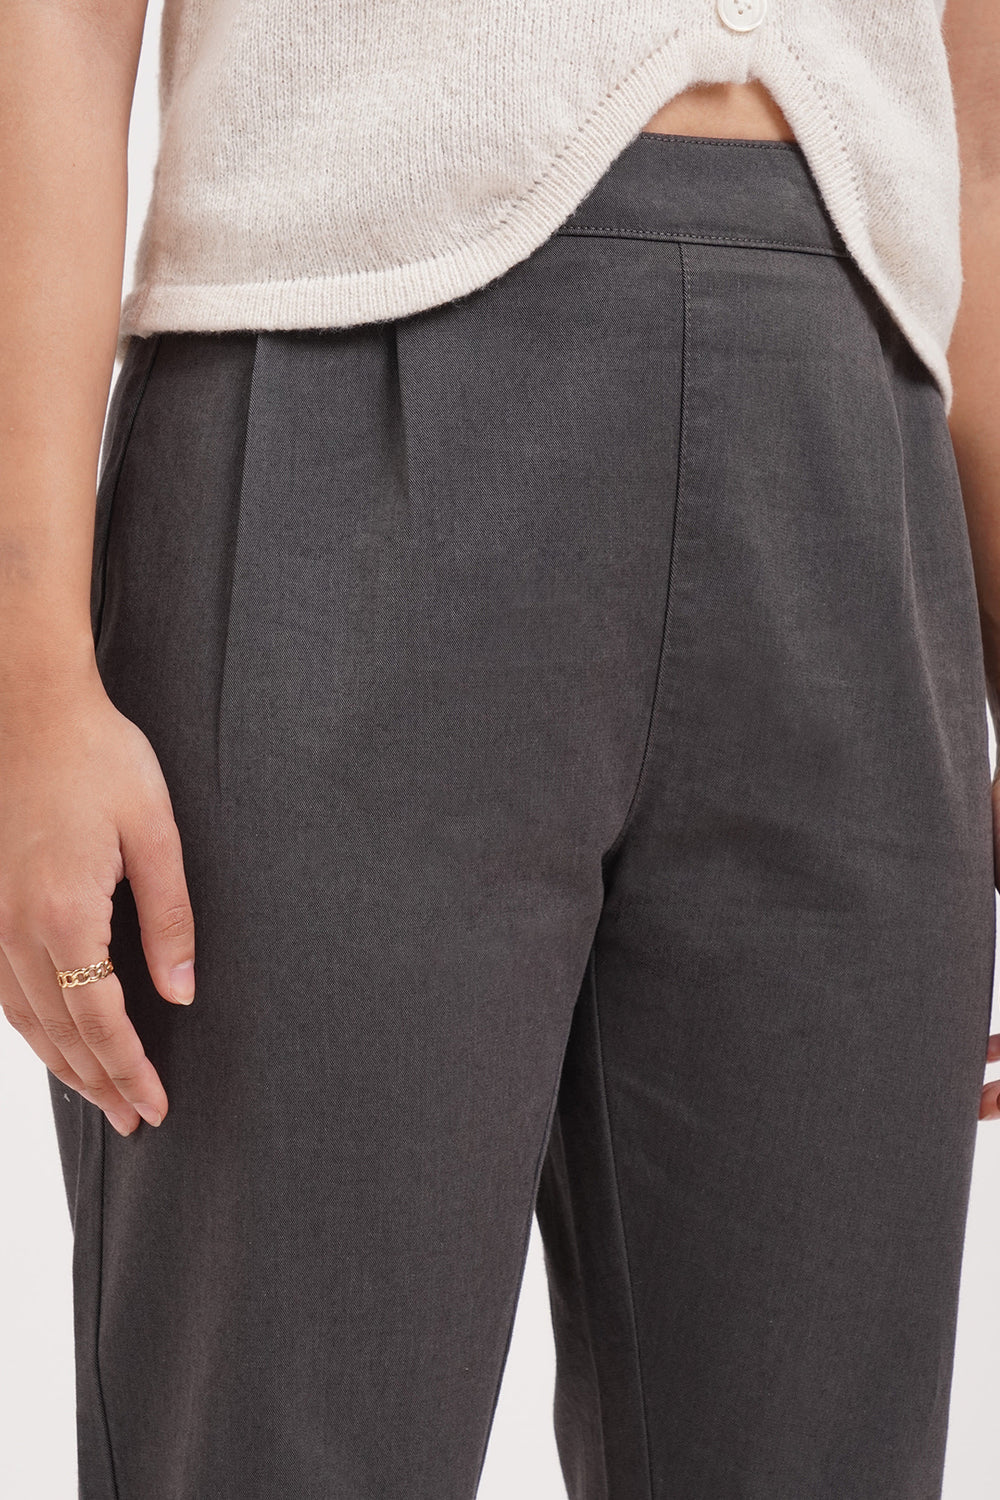 Penshoppe Core Women's Shapewear Shorts – PENSHOPPE